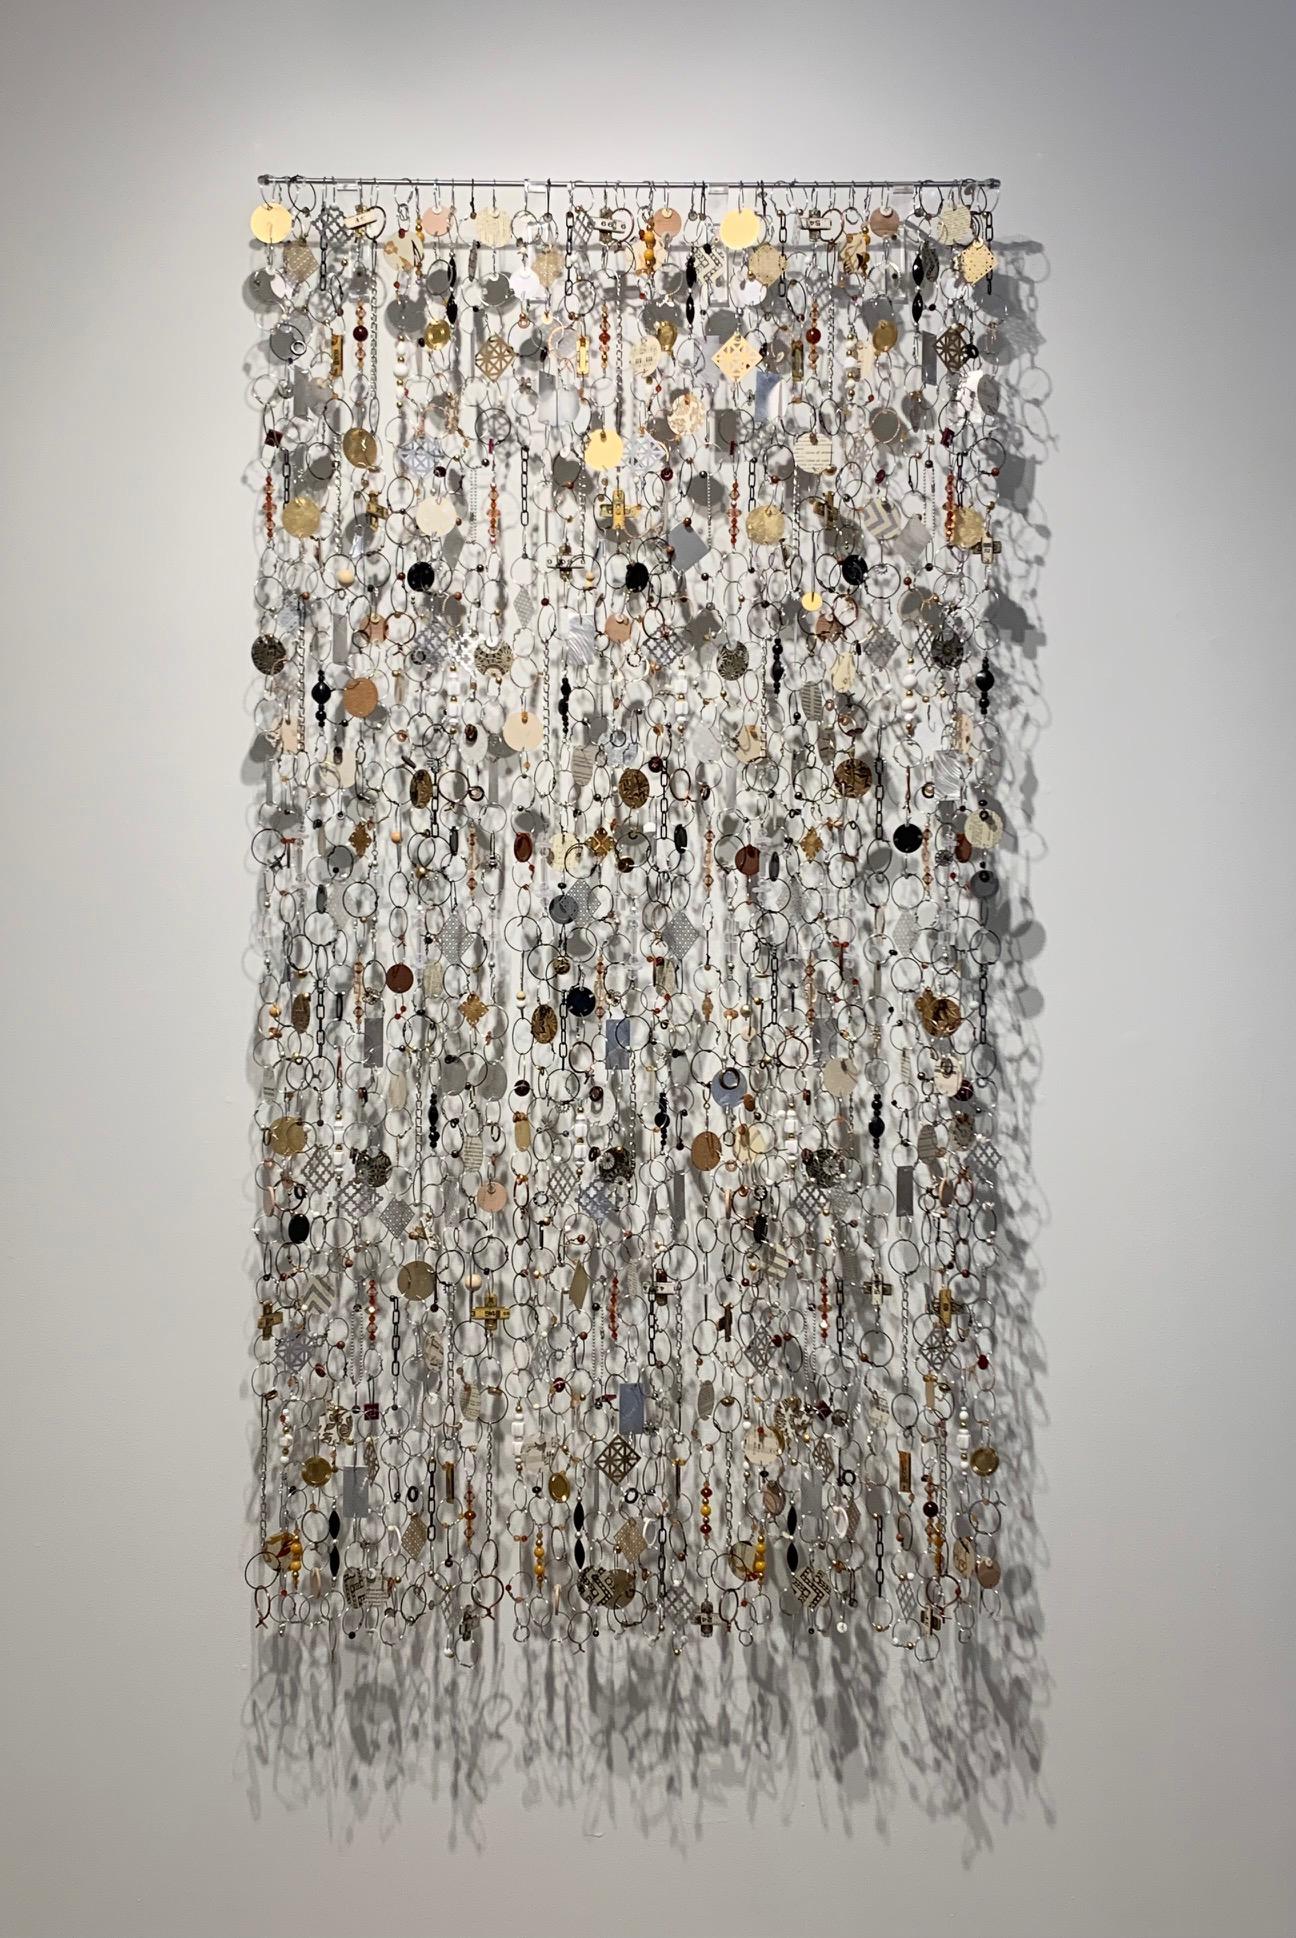 John Garrett Abstract Sculpture – "Trinket Net No. 3", Gemischte Medien, Wandteppich, Wandskulptur, Metall, Kunststoff